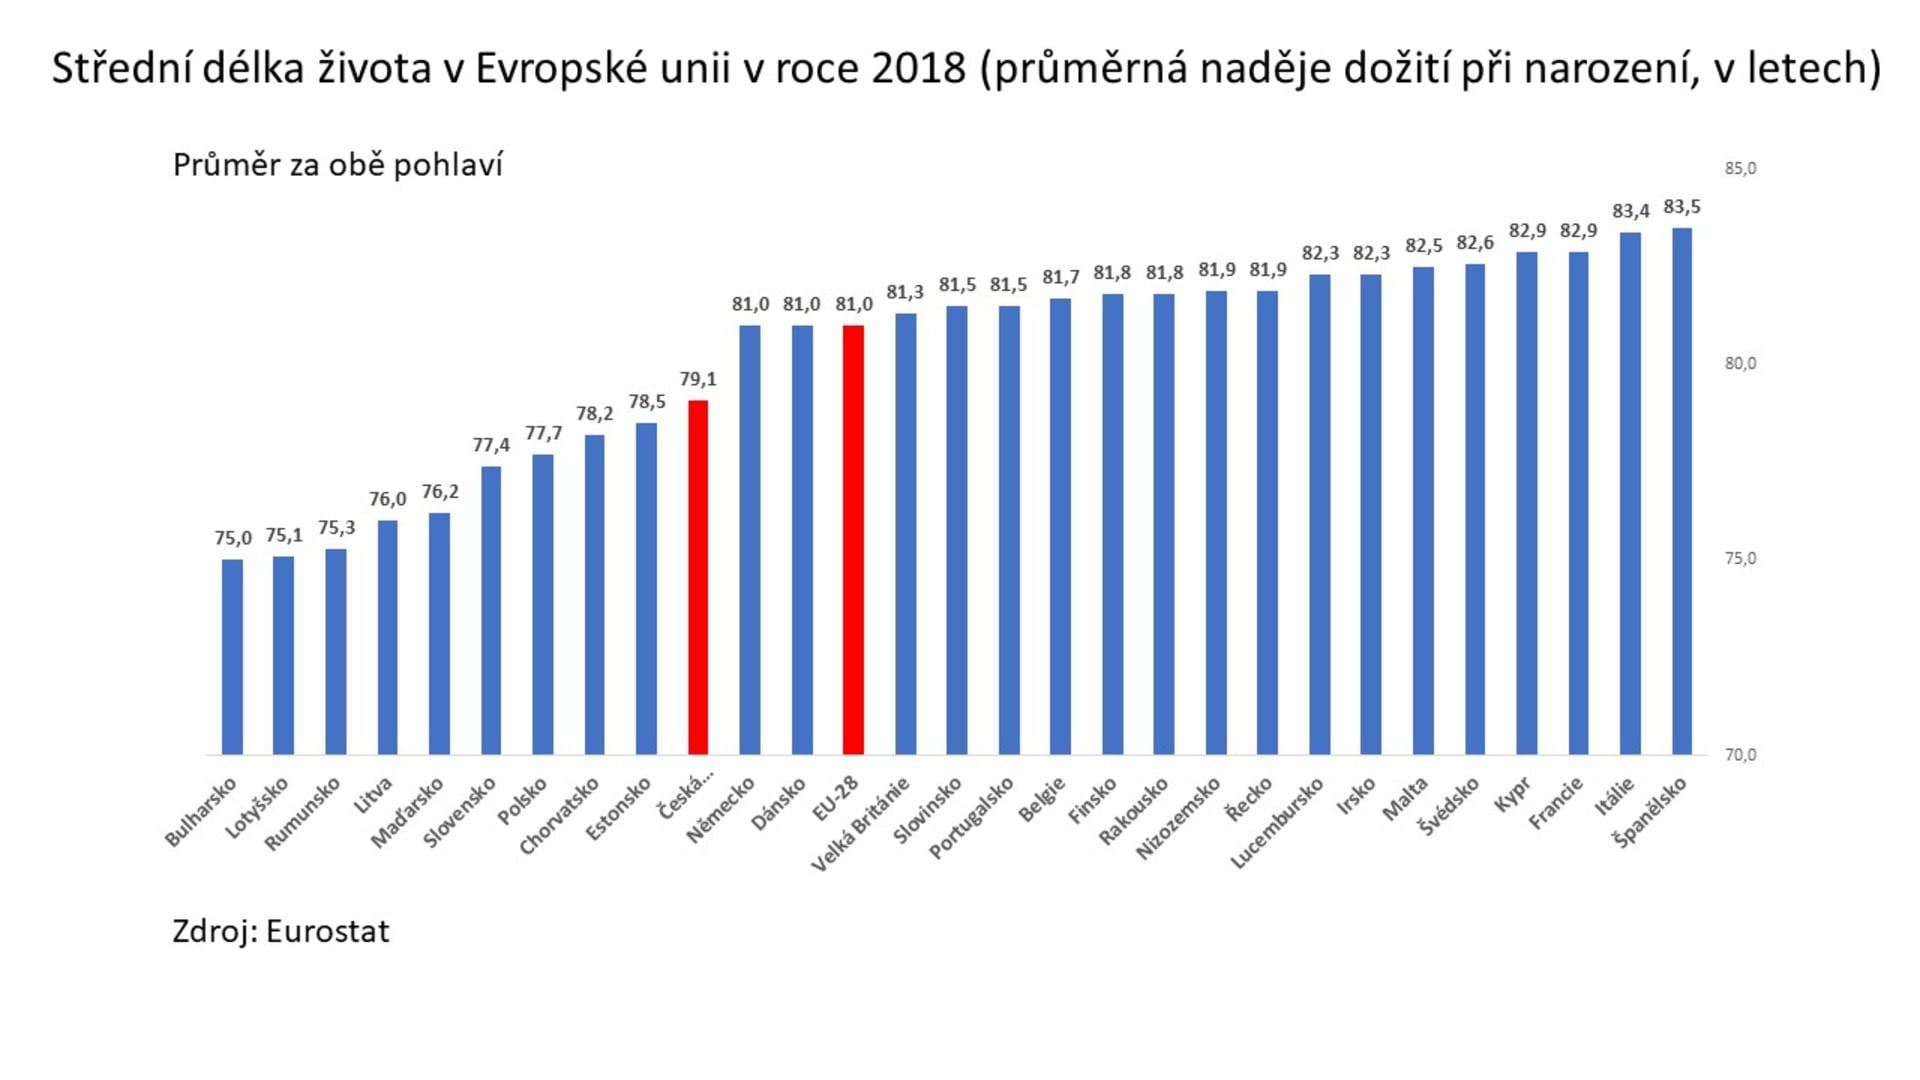 Jaký je průměrný věk mužů v České republice?